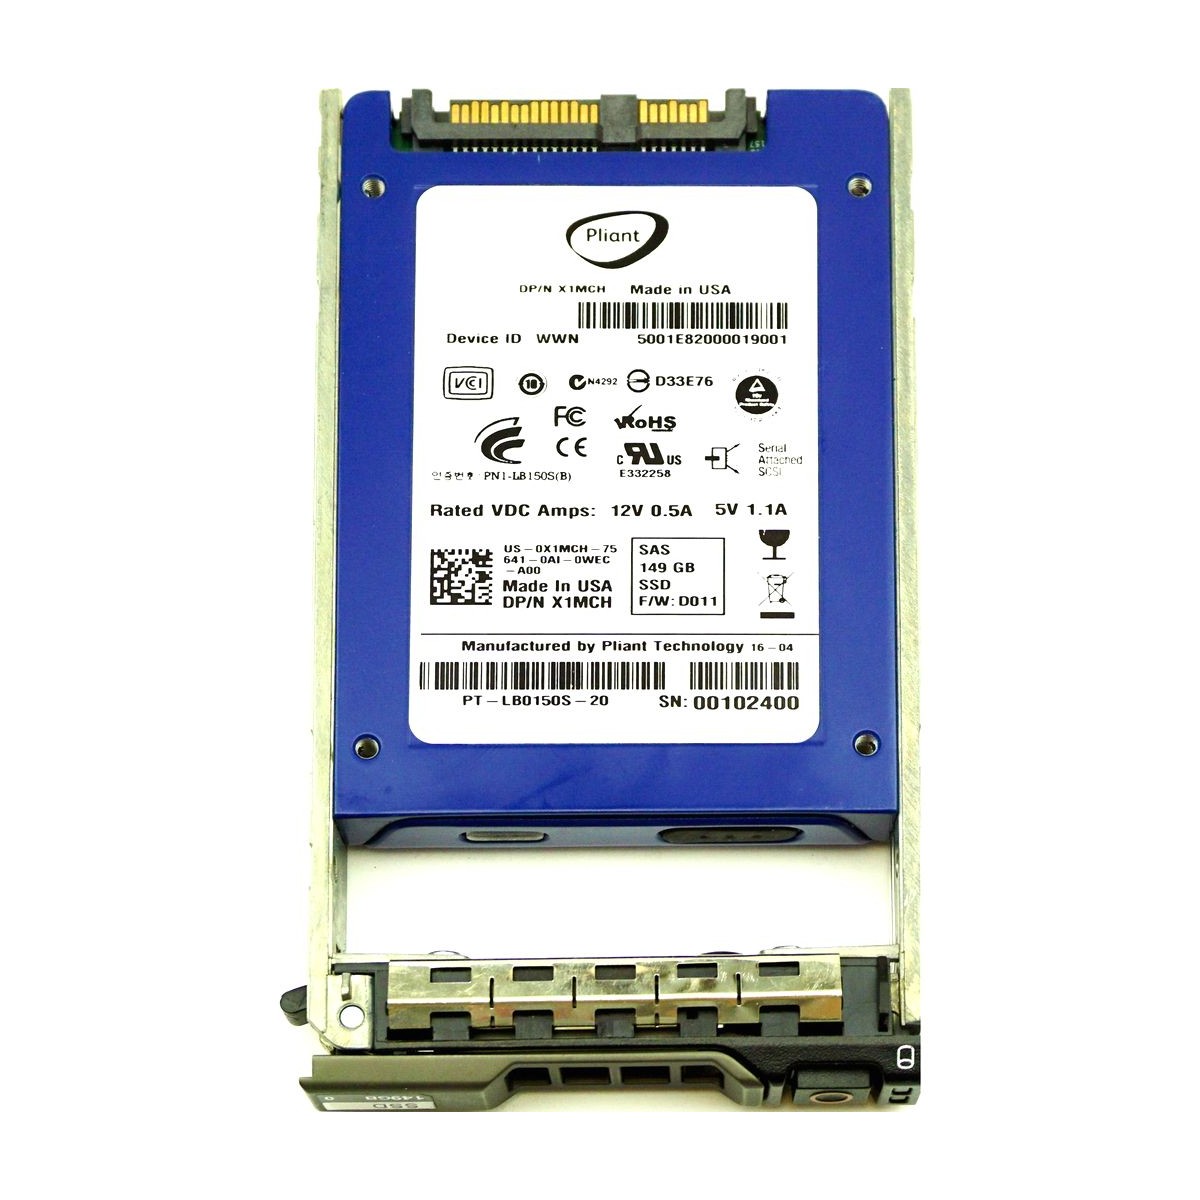 DYSK DELL PLIANT 149GB SSD SAS 3G 2,5 RAMKA X1MCH